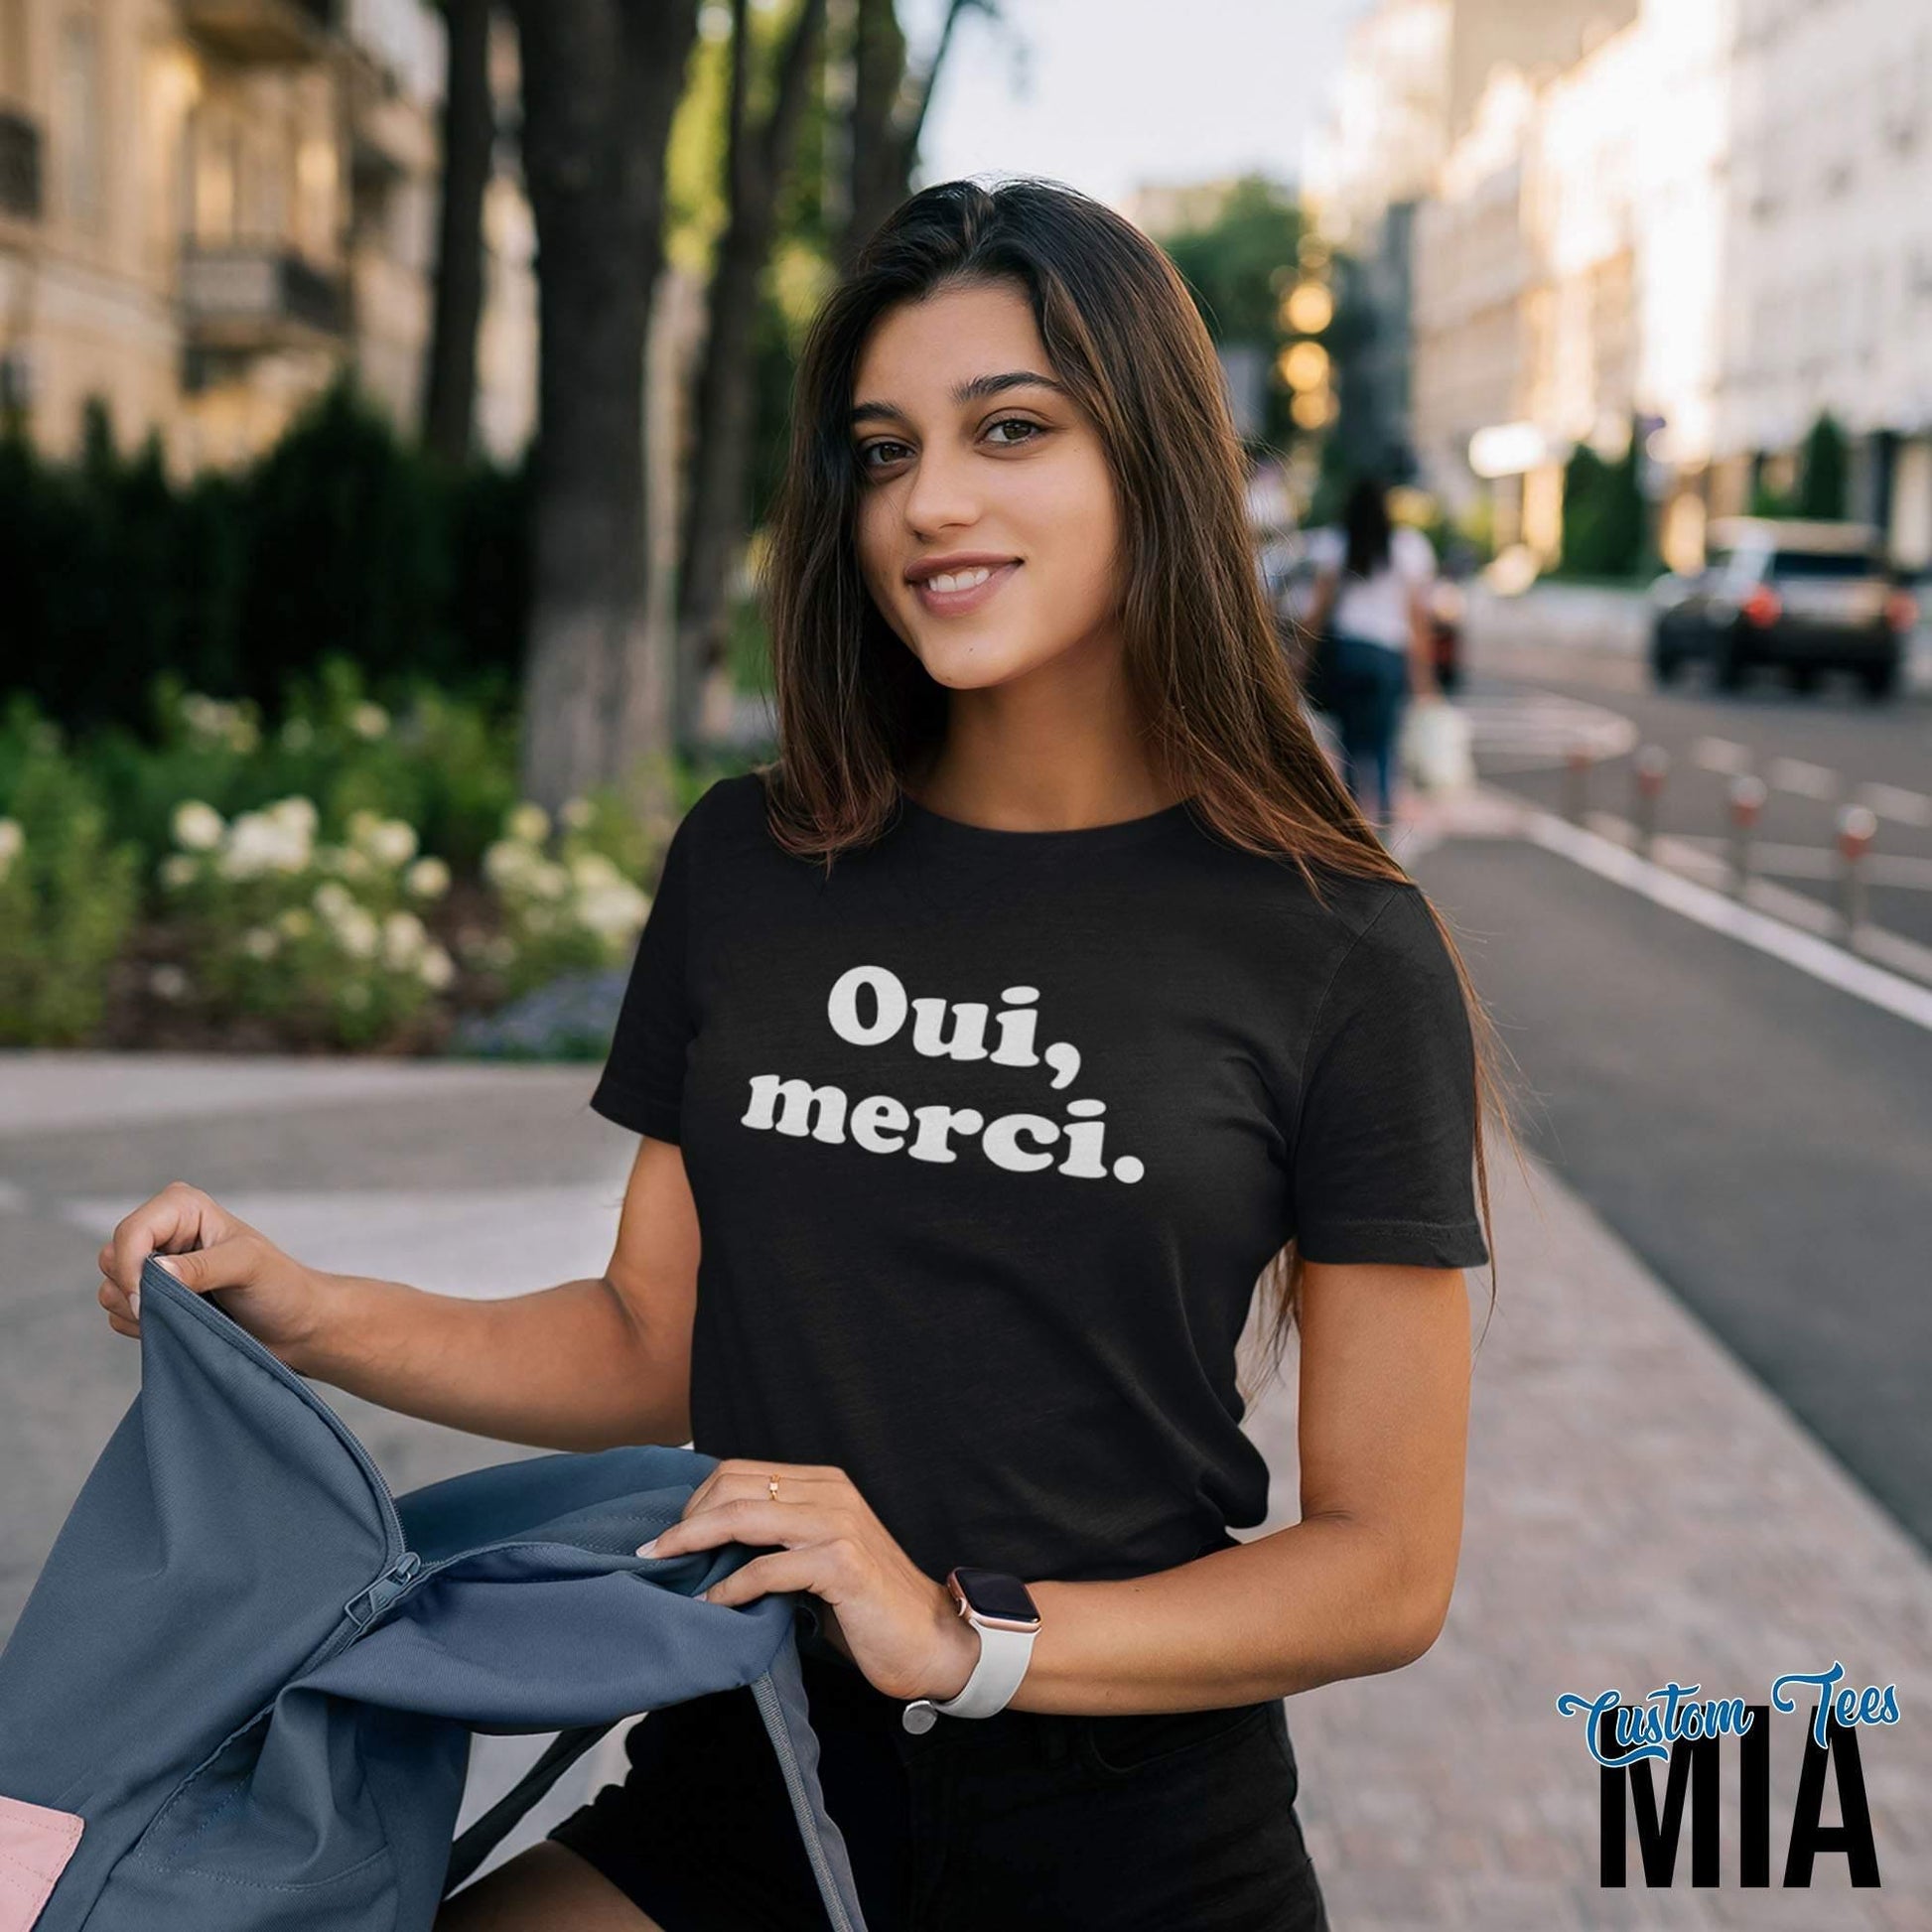 Oui Merci T-Shirt - French Quote Shirt - French Shirt - French Sayings - Quote Shirt - French Phrase - Yes Thank You Shirt - Custom Tees MIA